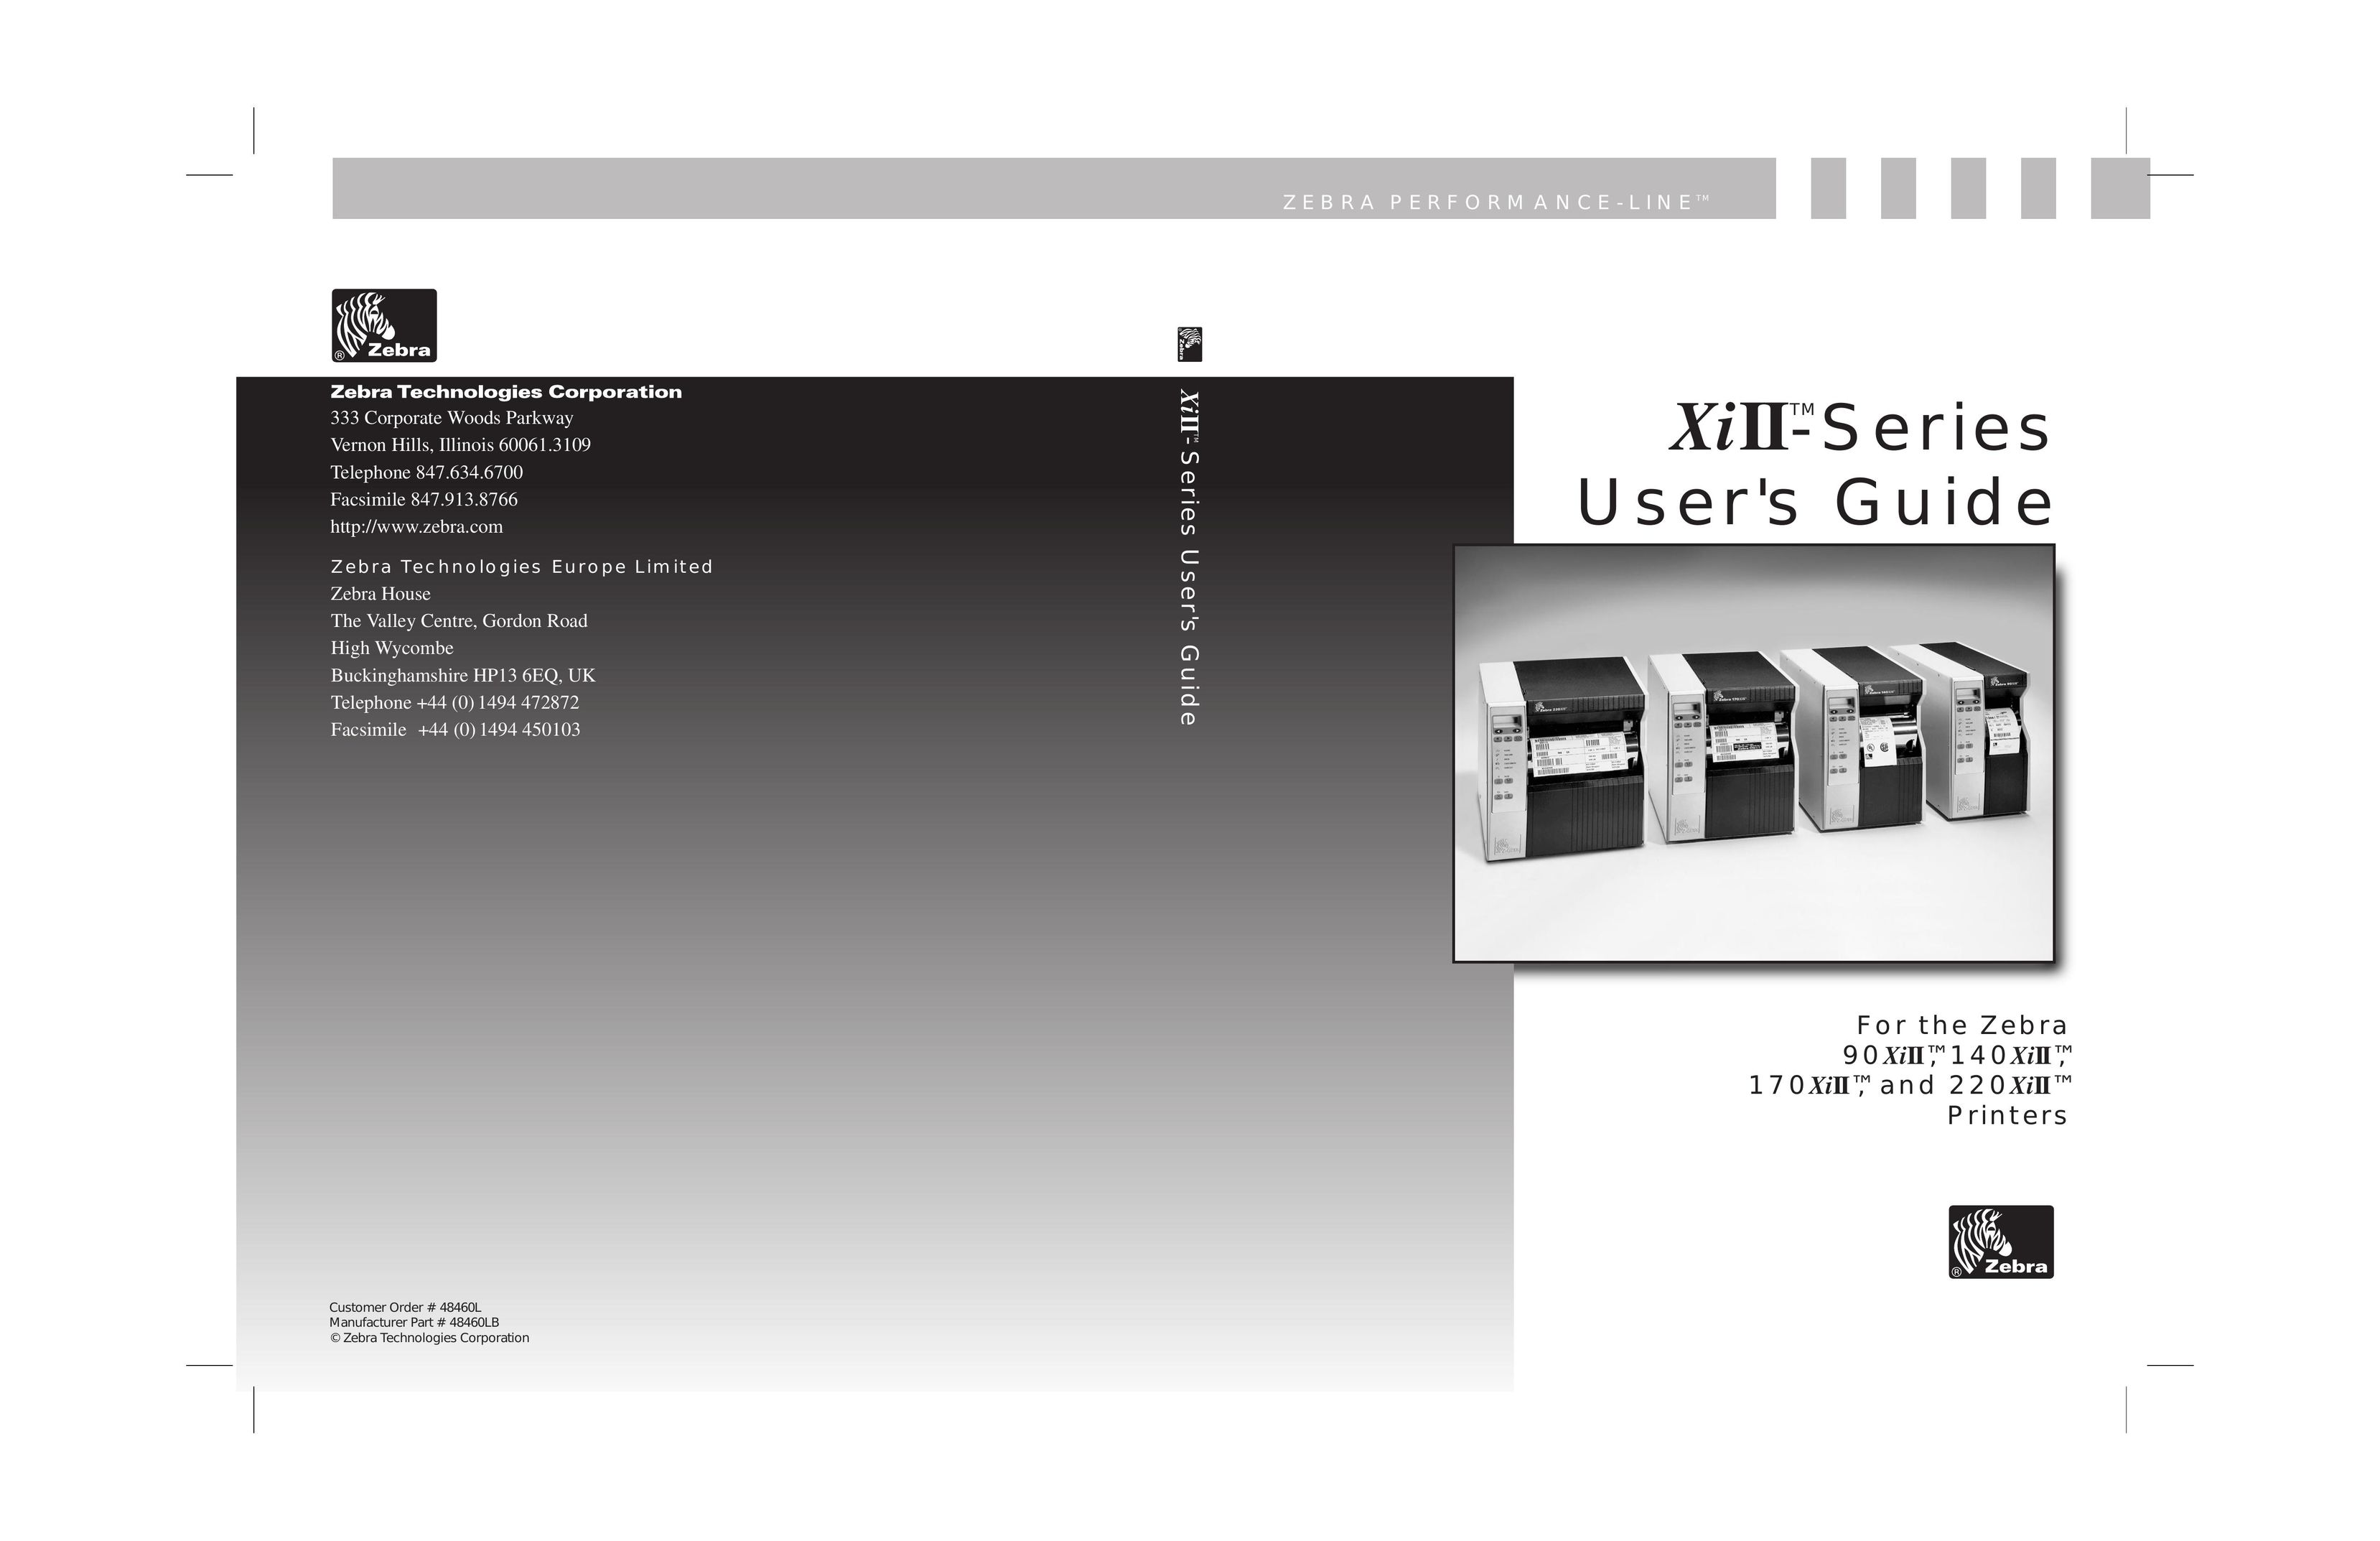 Genicom and 220 TM Printer User Manual